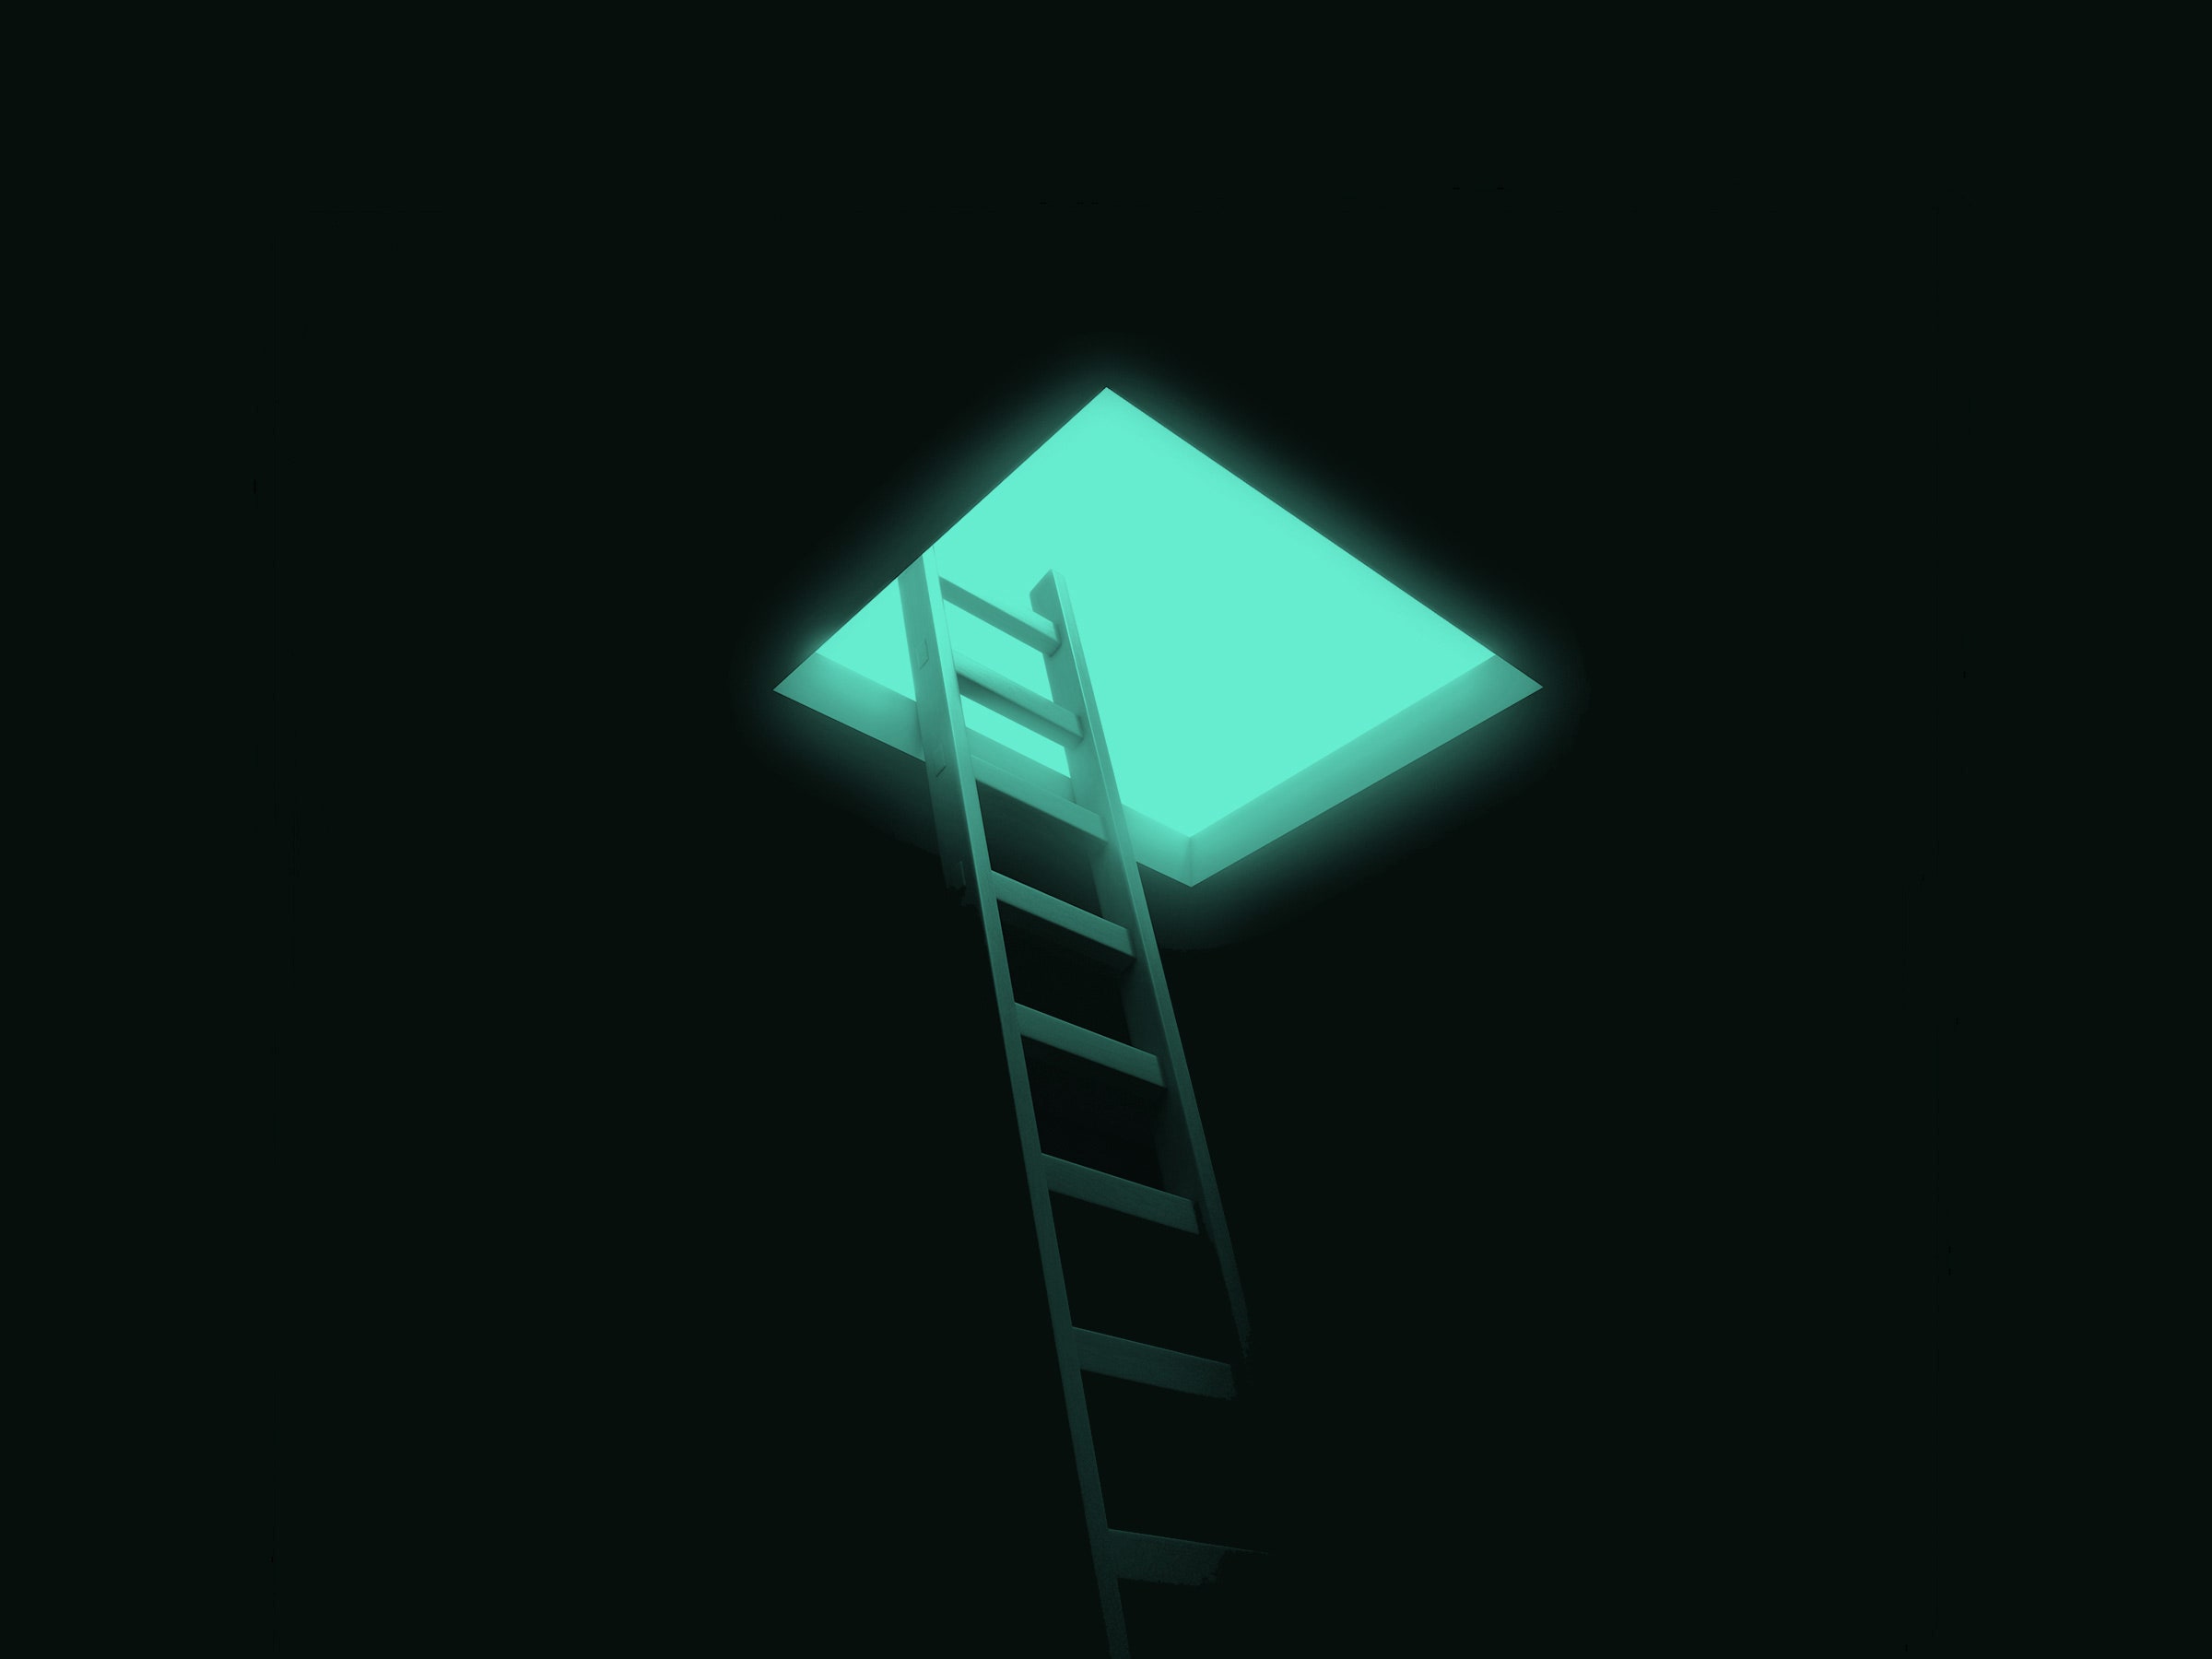 Fuja da escuridão usando uma escada